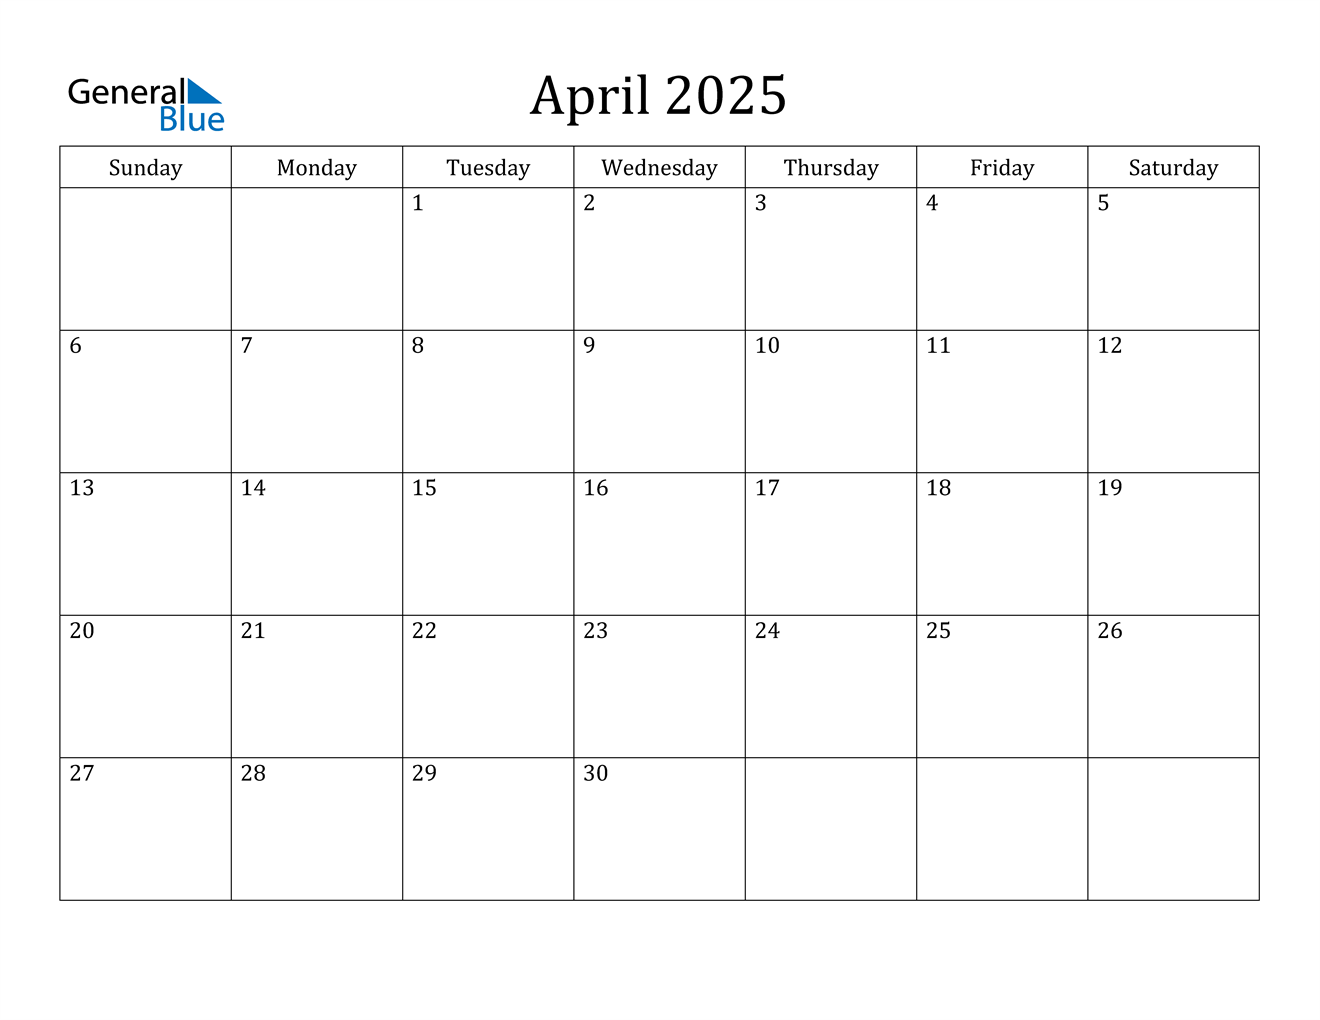 General Blue April 2022 Calendar Customize and Print